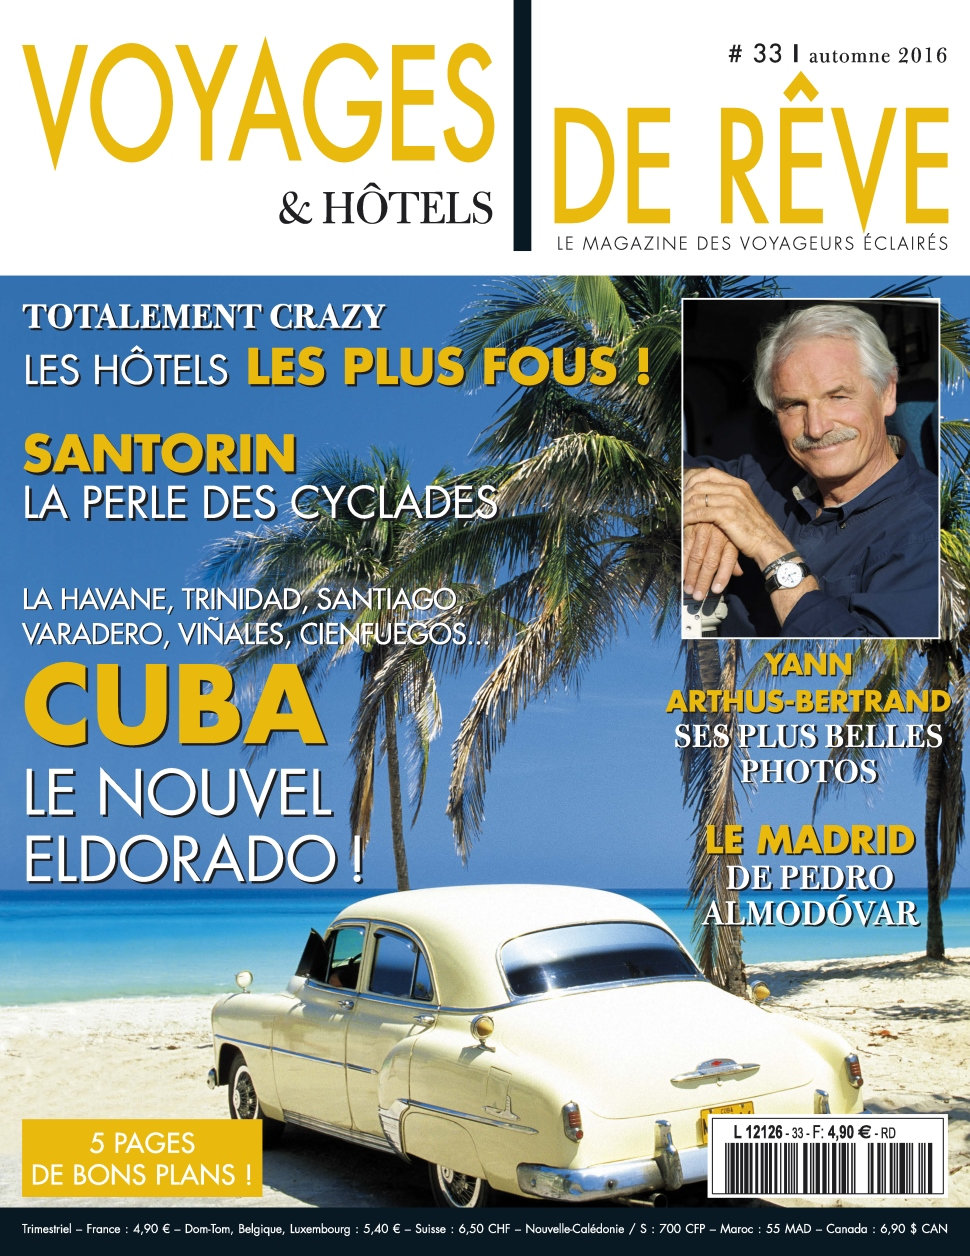 Voyages & Hôtels de Rêve N°33 - Automne 2016 